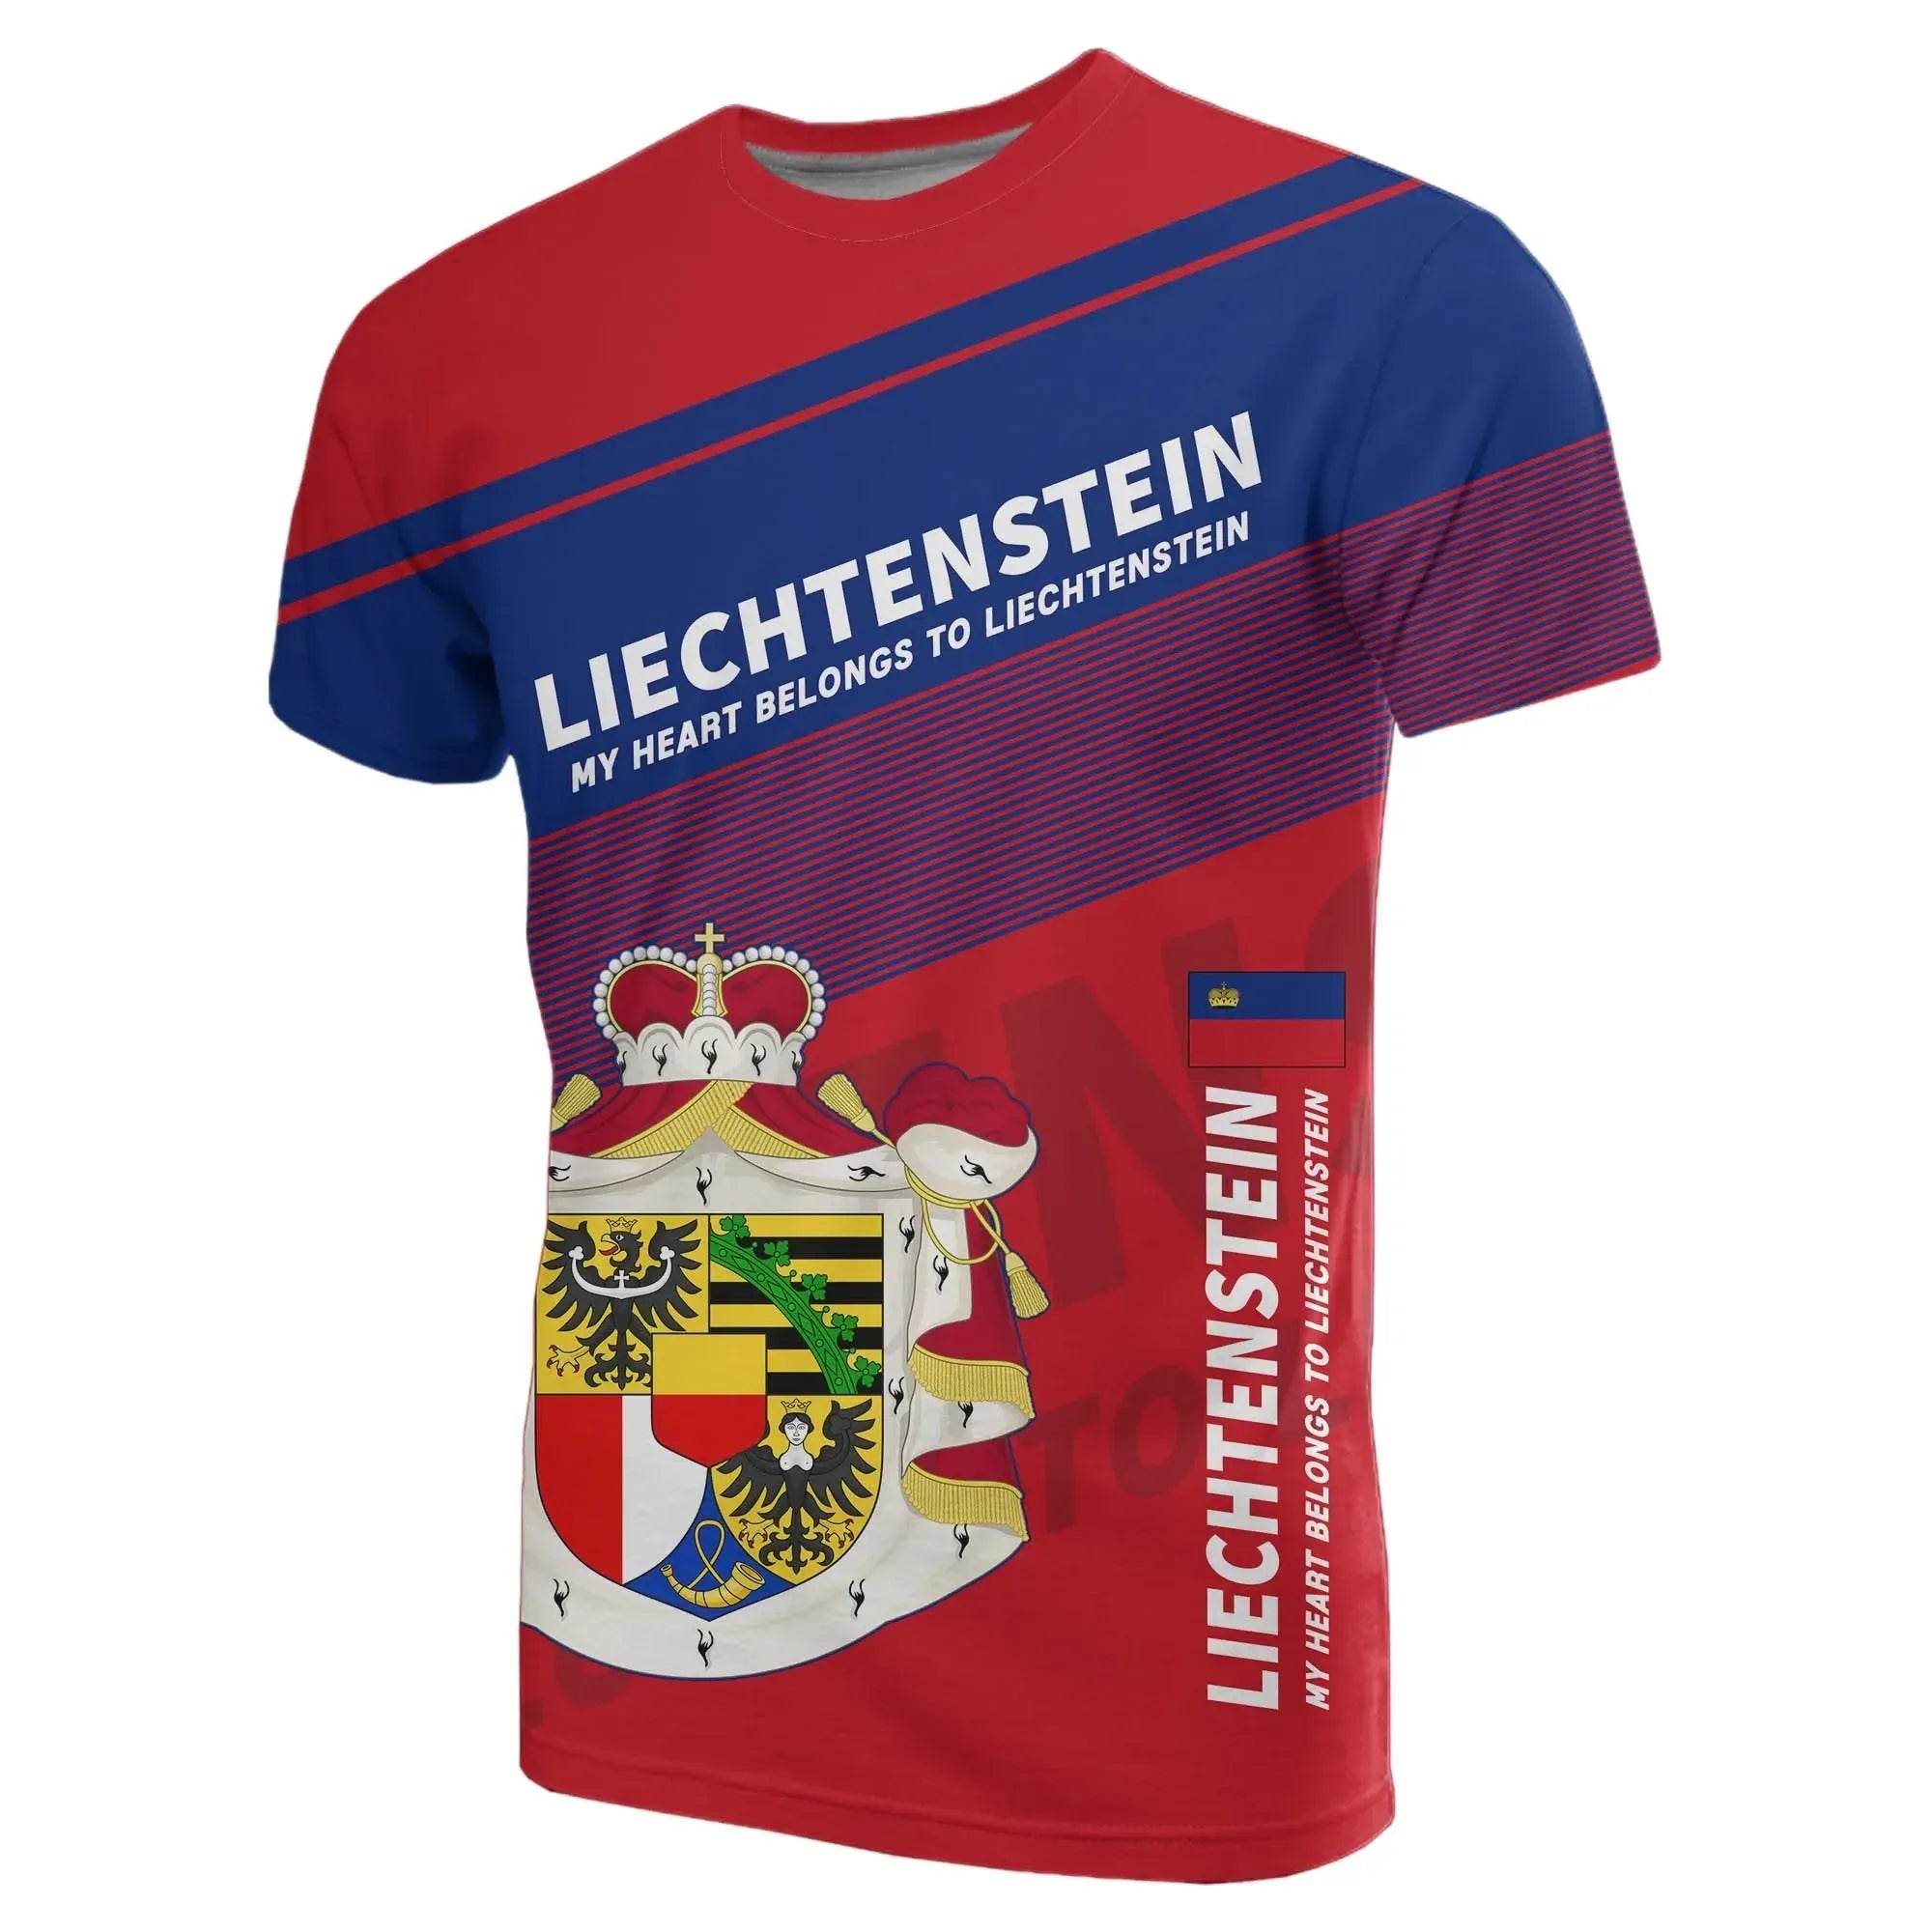 liechtenstein-flag-motto-t-shirt-limited-style